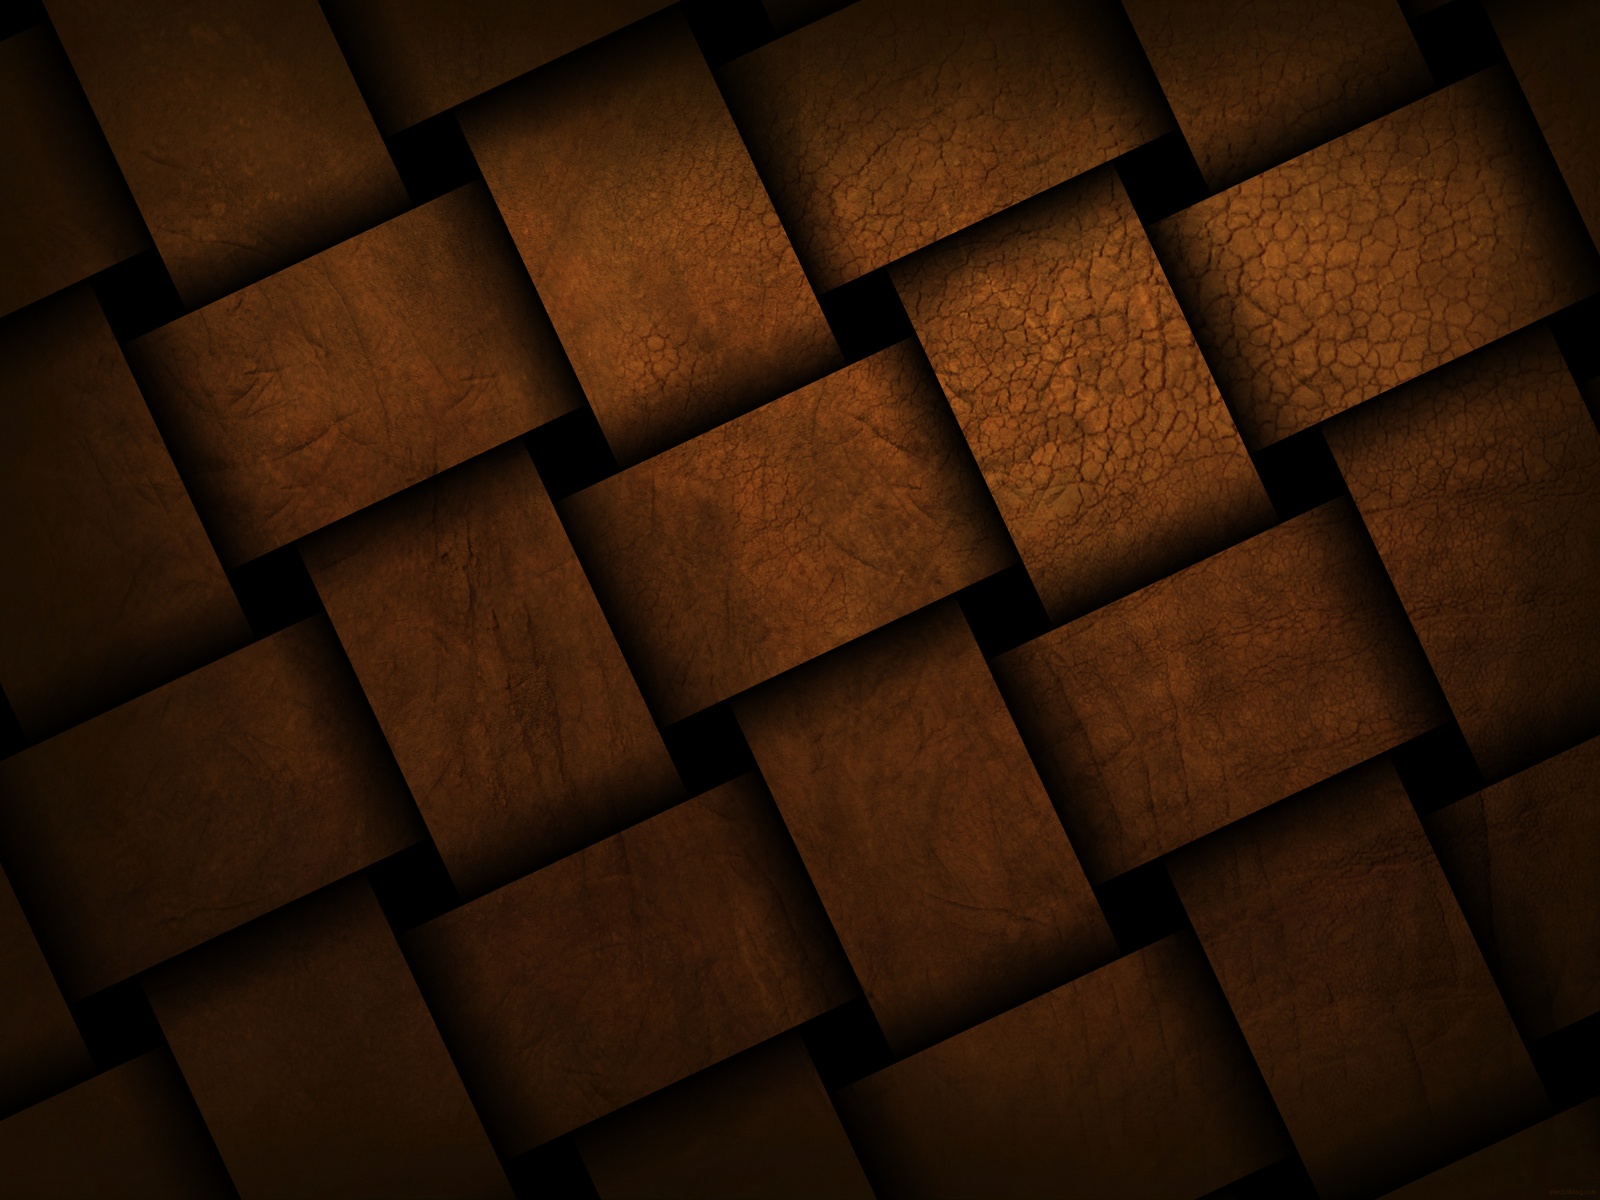 Background sàn gỗ - Bộ sưu tập theo xu hướng hiện đại | Sàn Gỗ Gia Đình